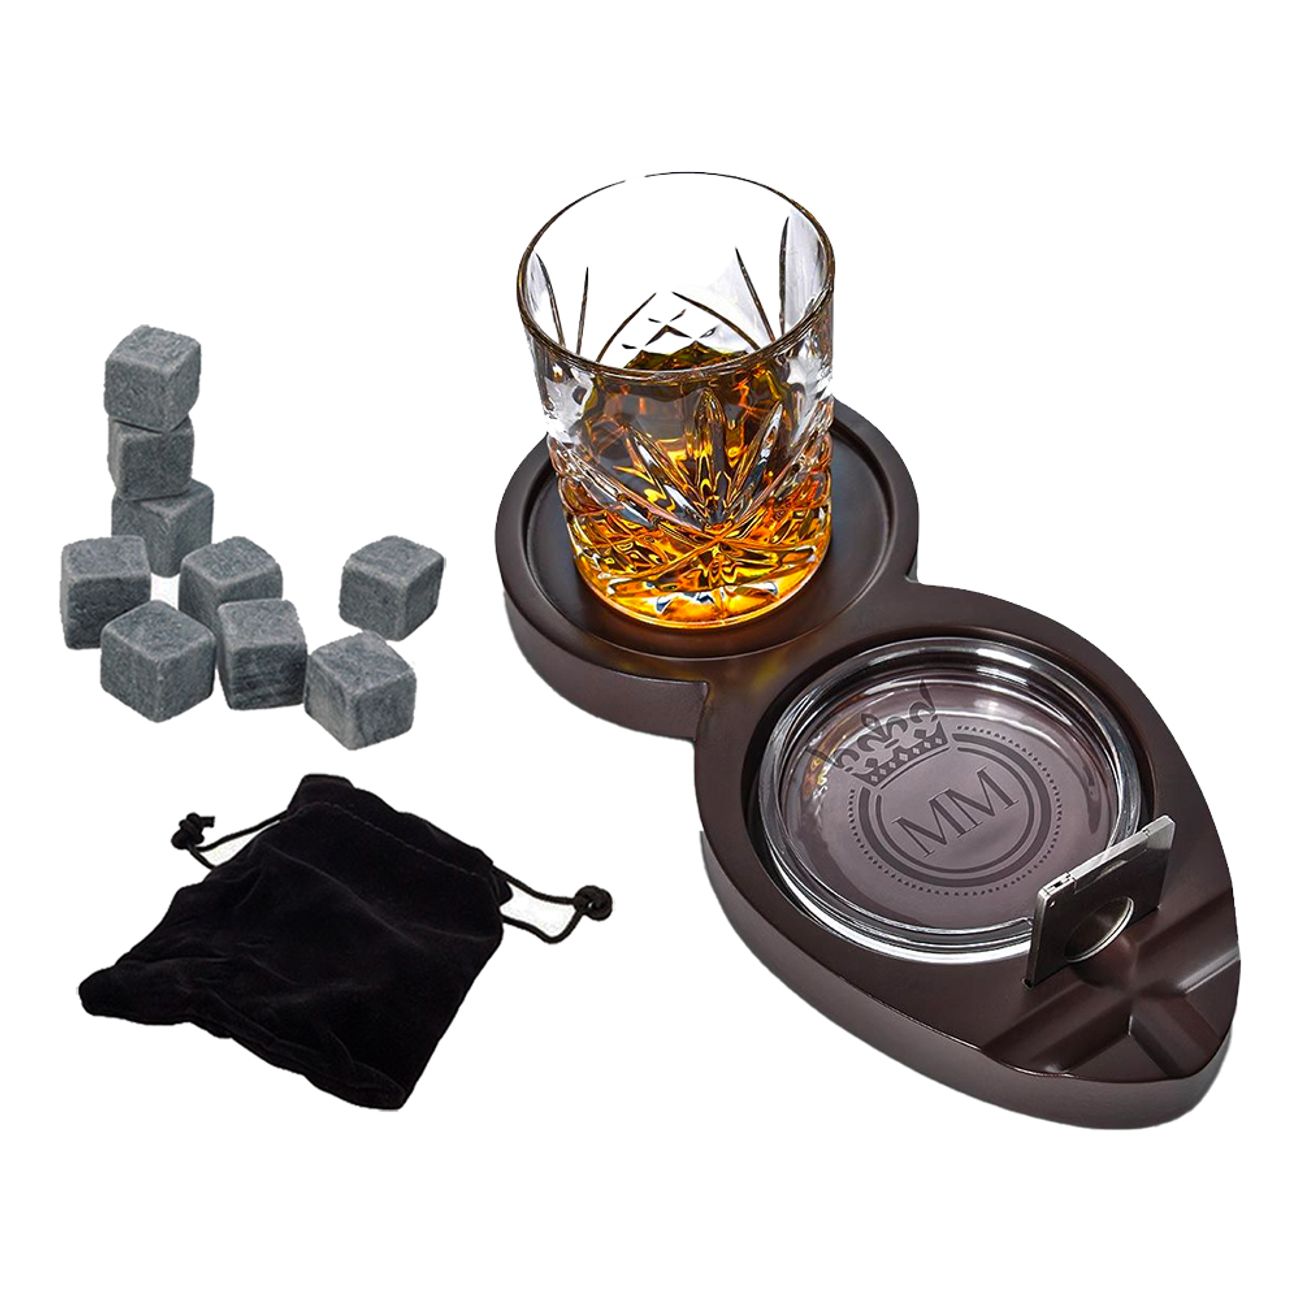 whiskey-cigarr-bricka-set-98883-1